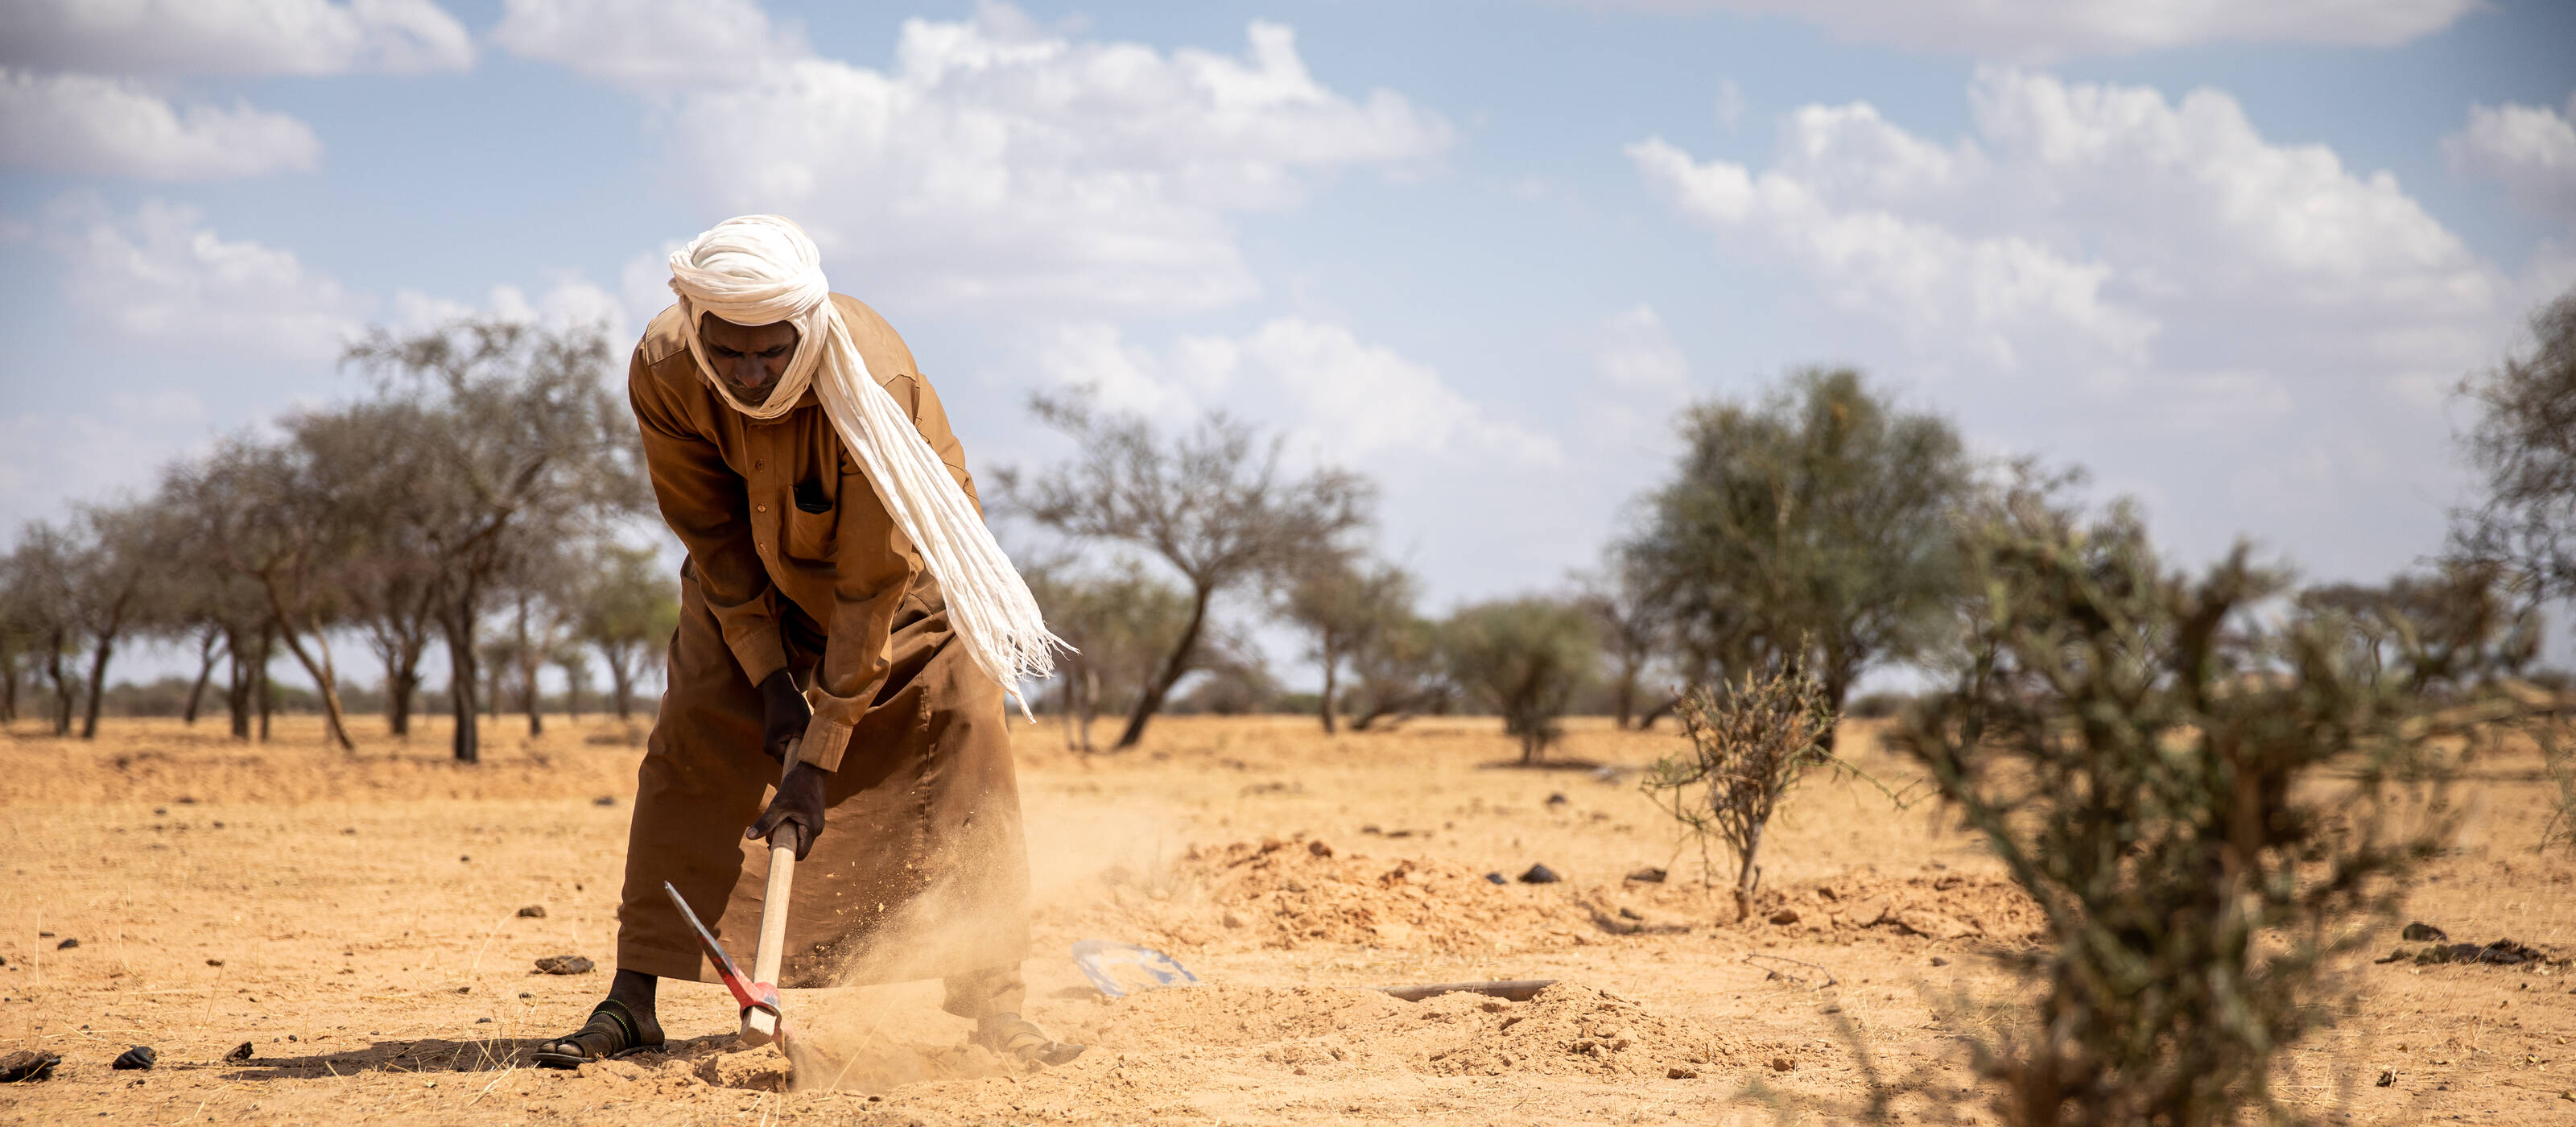 Bauer bei der Feldarbeit im Tschad: Menschen in Ländern des Globalen Südens verursachen so gut wie keine klimaschädlichen Emissionen, aber leiden am stärksten unter Hitze, Dürre und anderen Folgen des Klimawandels.